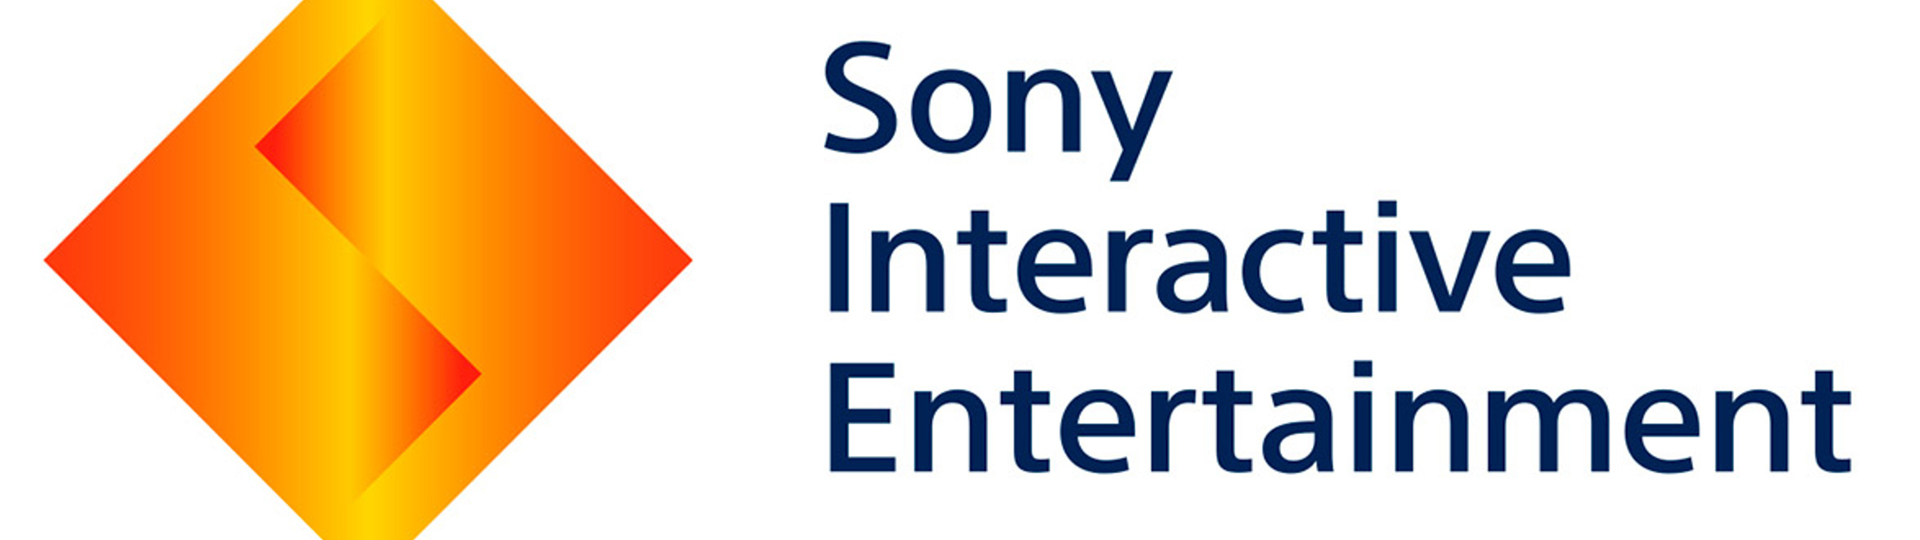 Sony poskytne podporu vývojářům ovlivněným koronavirem | Novinky